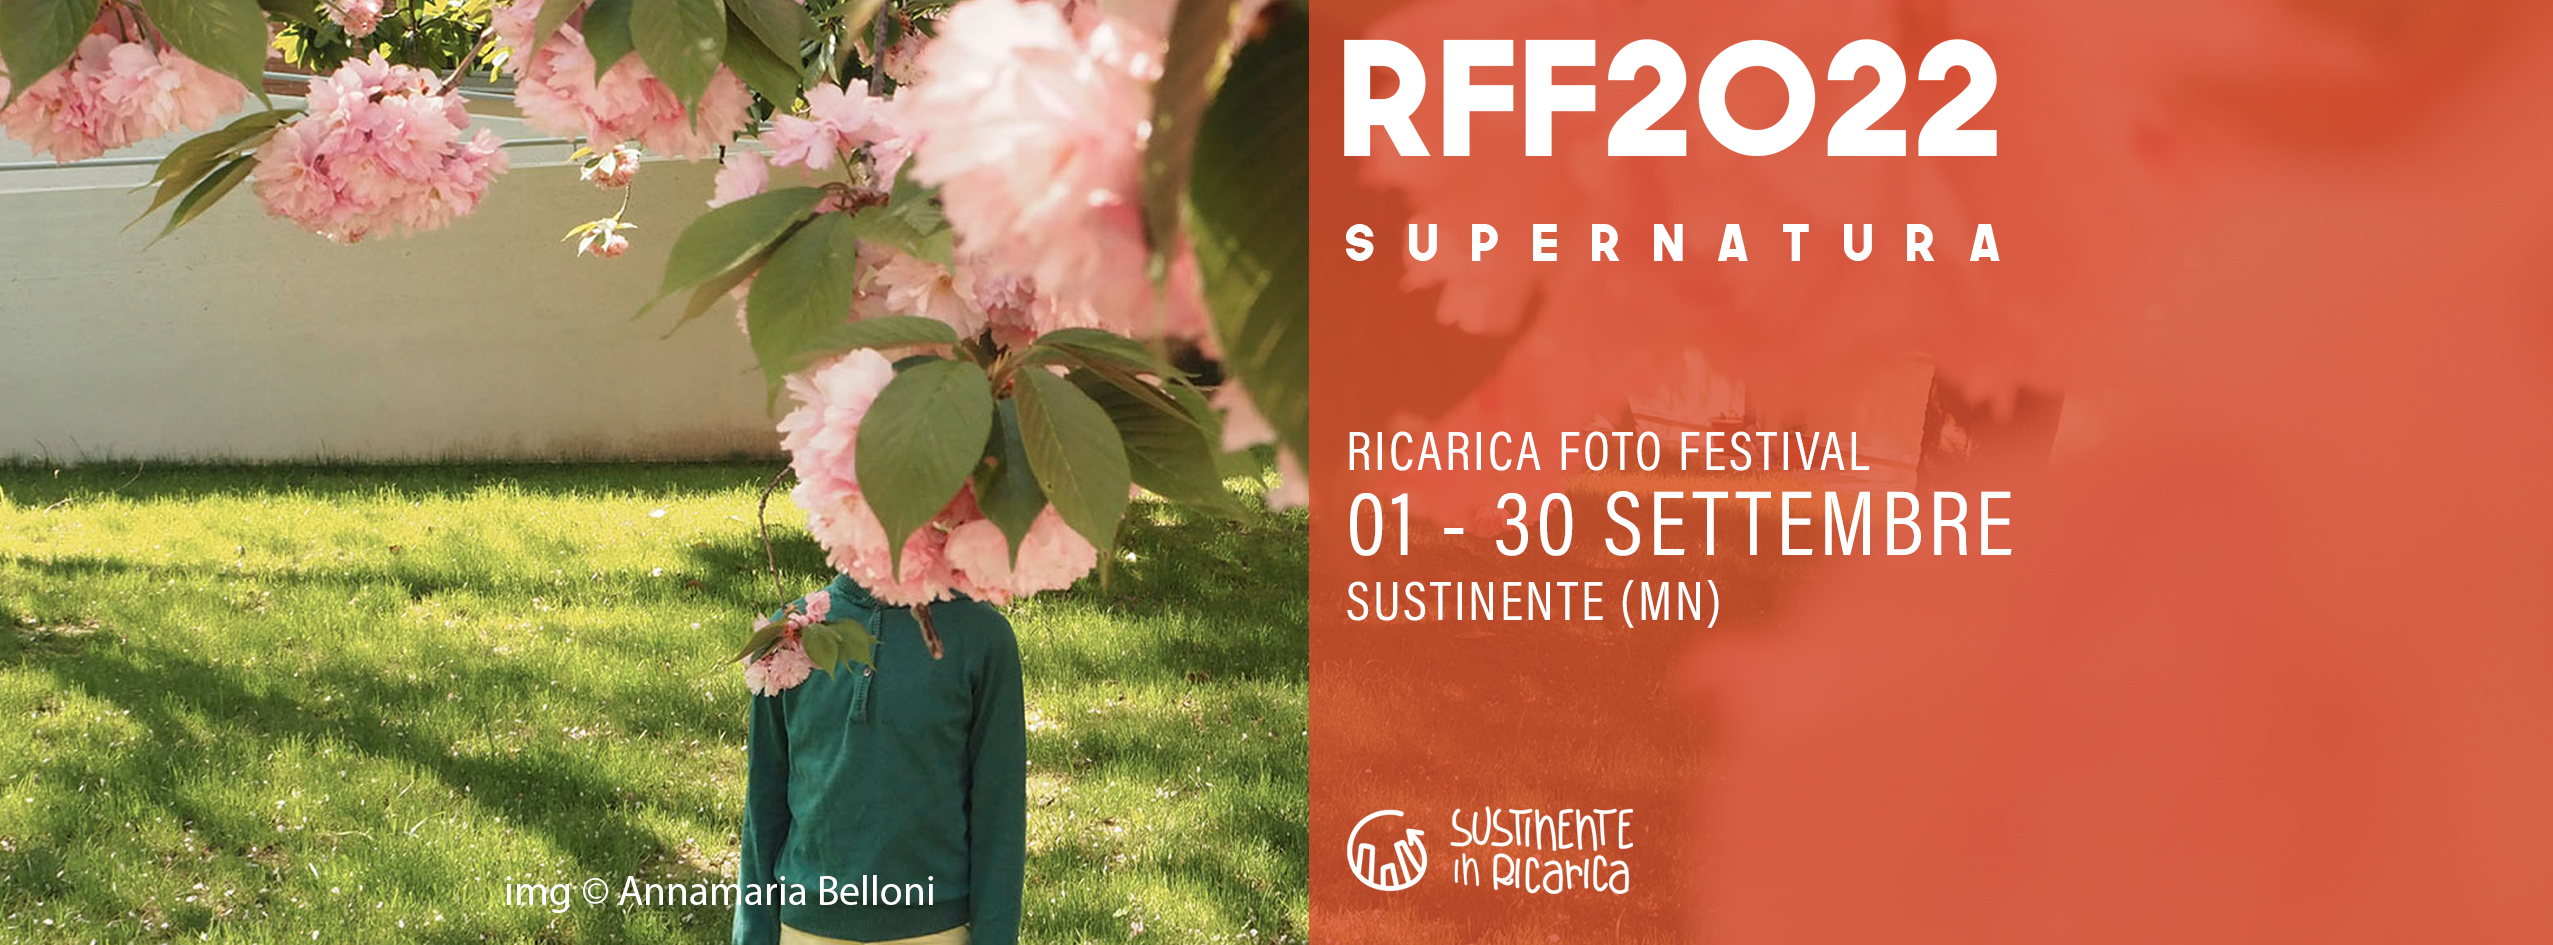 Ricarica Foto Festival 2022